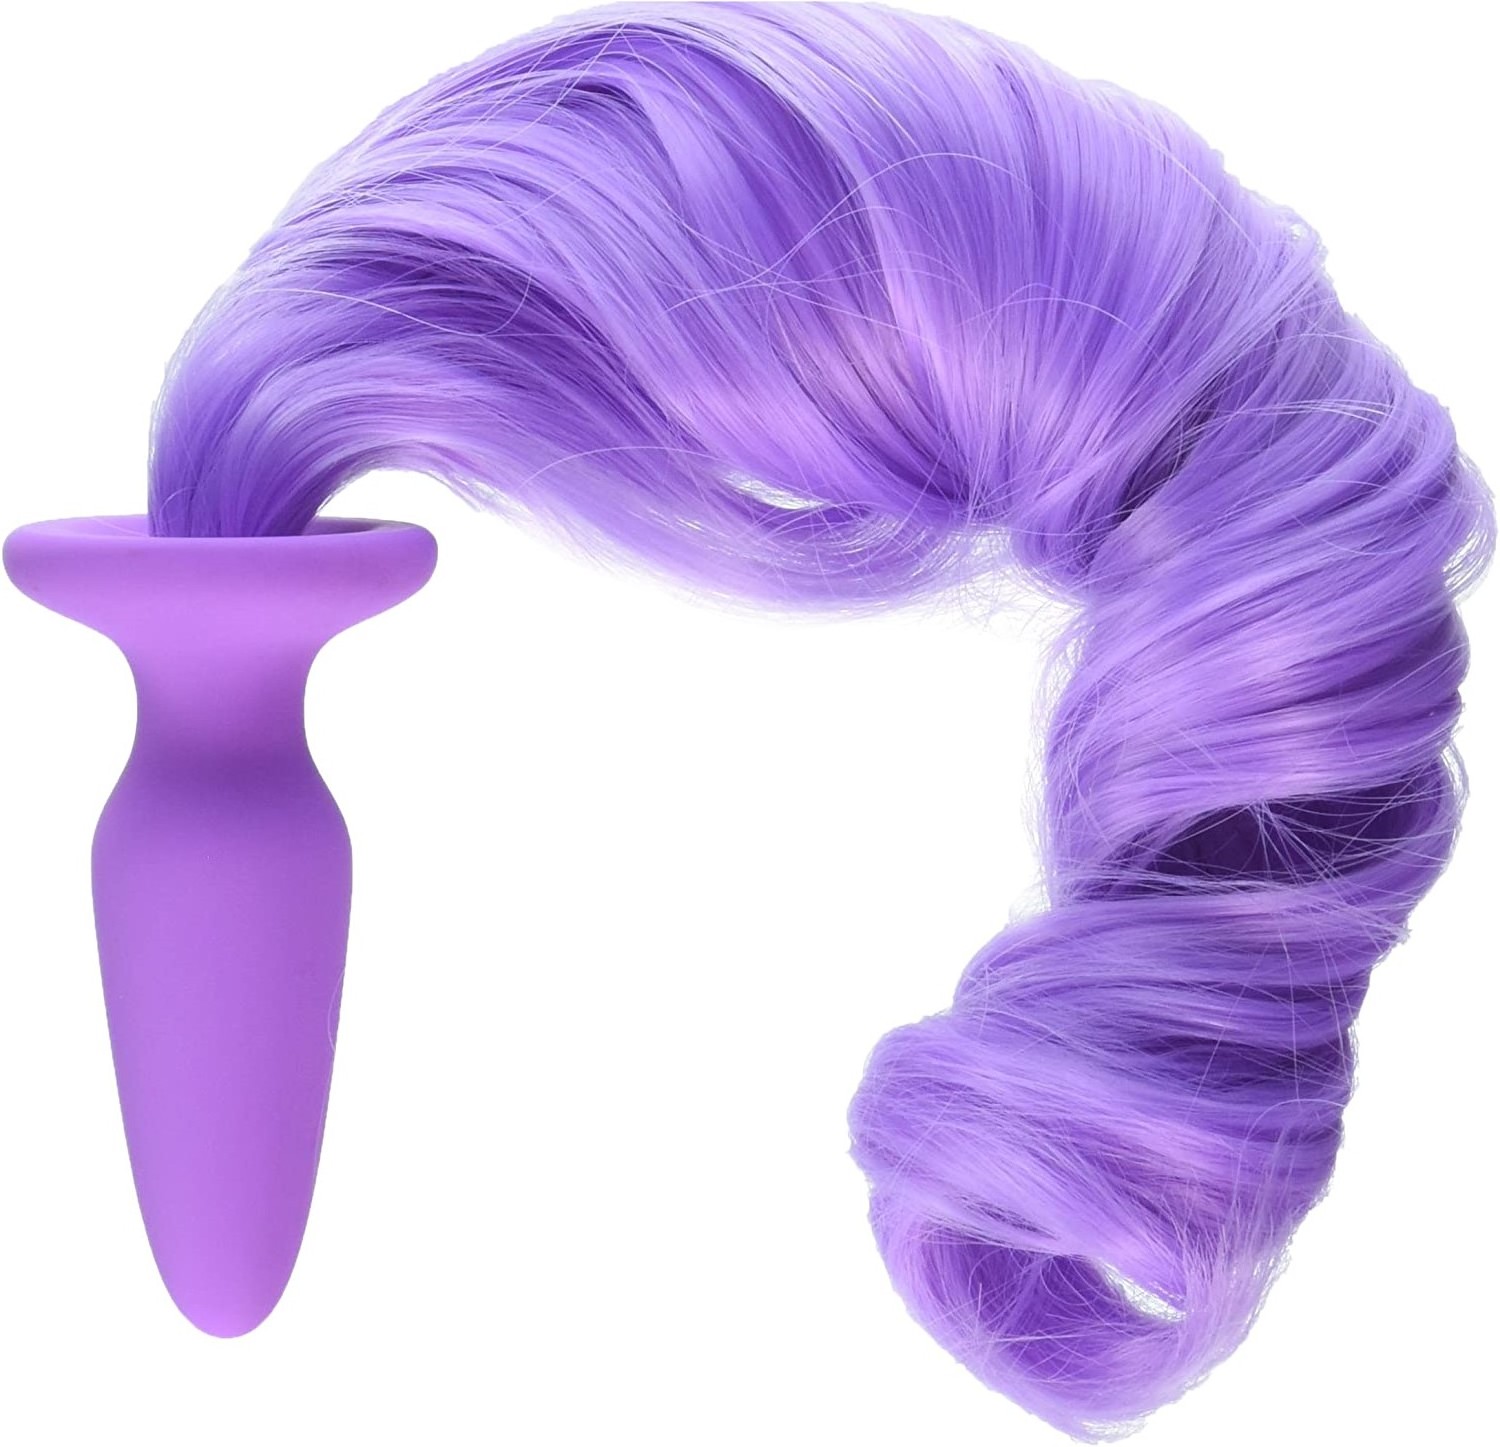 NS Novelties Unicorn Tails Kuyruklu Silikon Anal Plug Purple